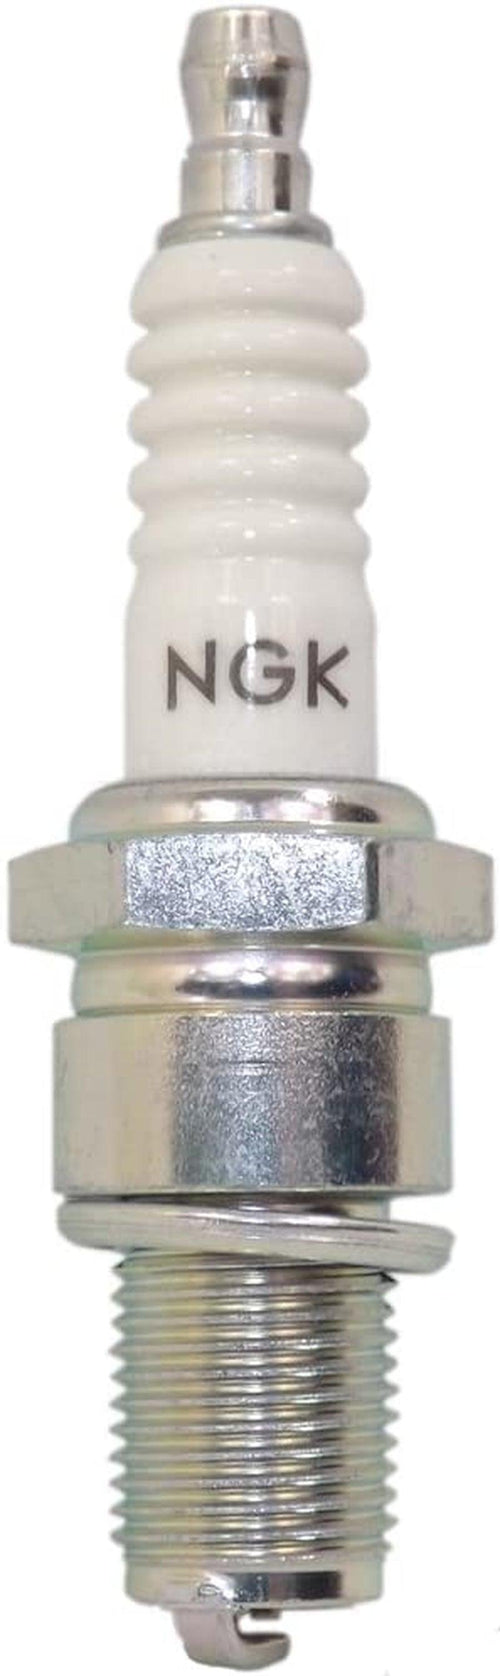 NGK (1034)  Standard Spark Plug, Pack of 1